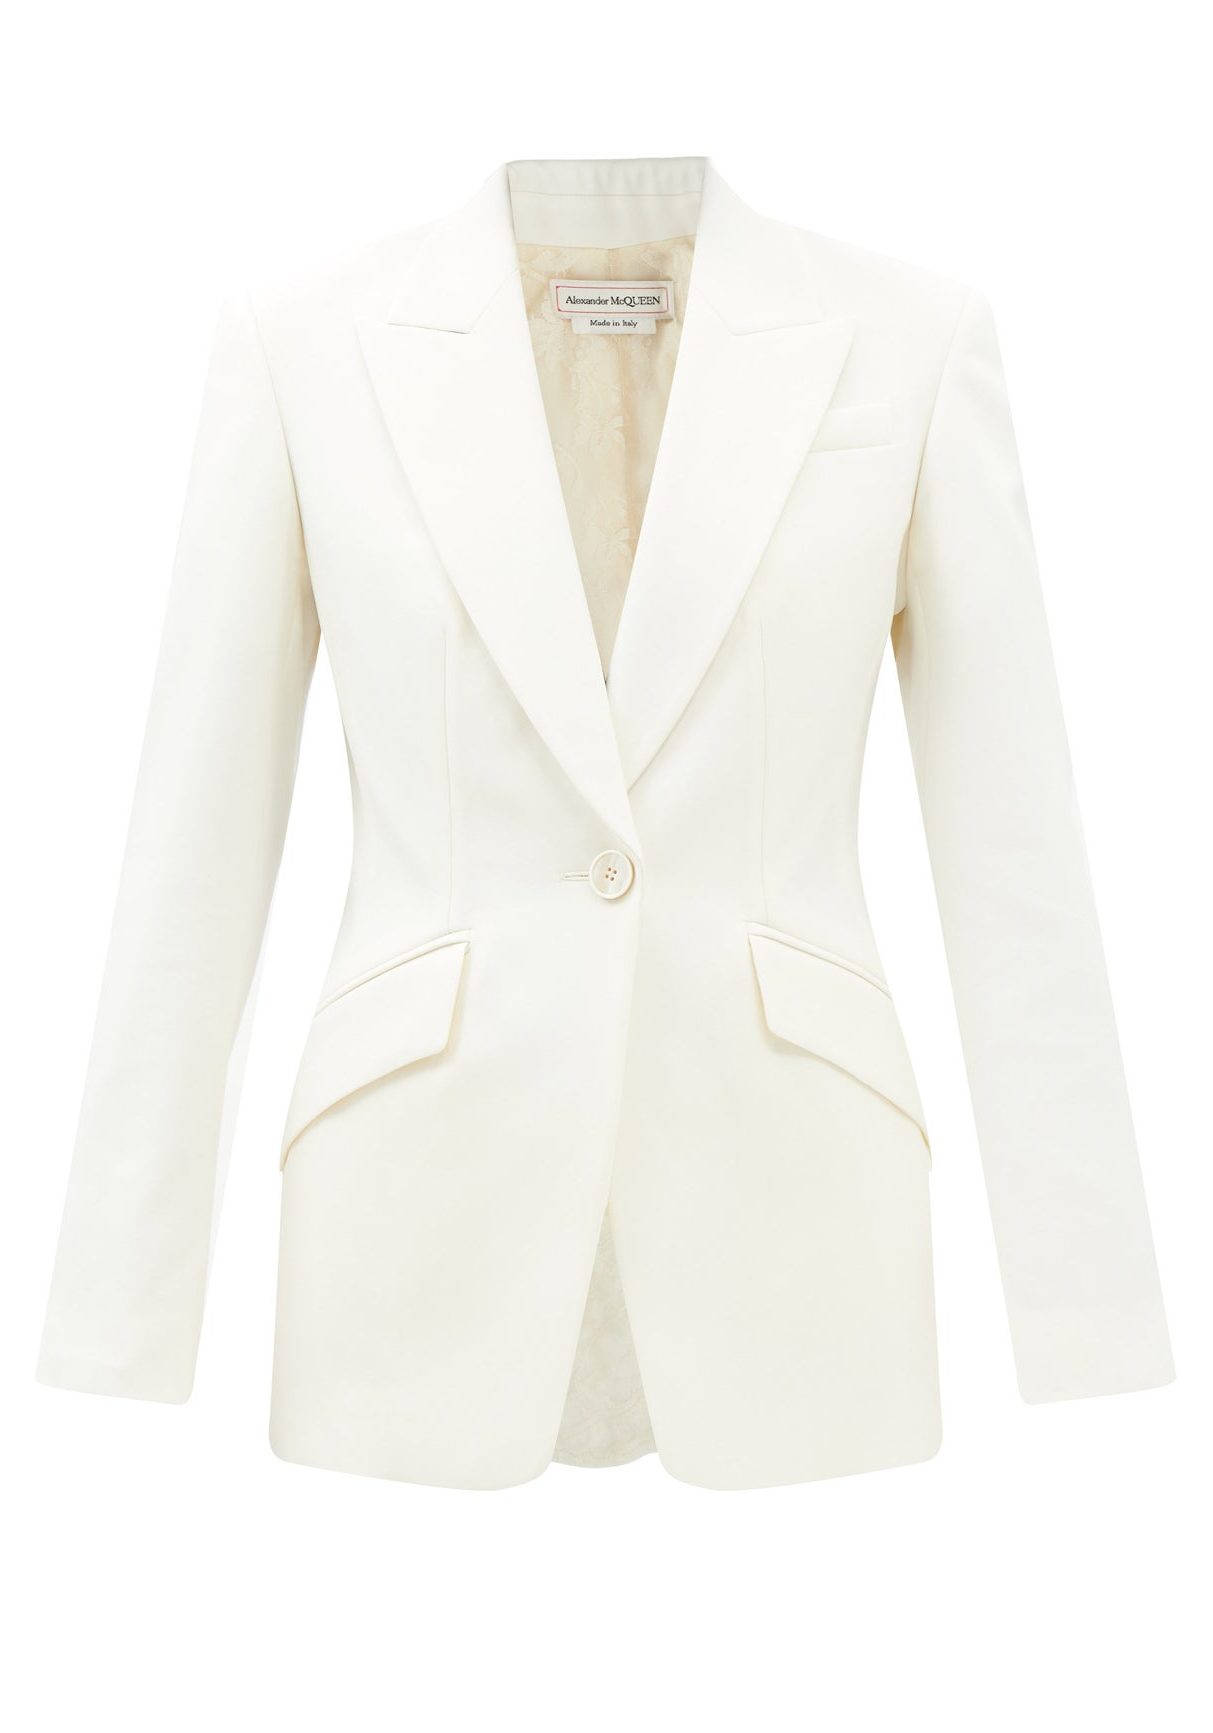 Alexander Mcqueen Bridal Suit Jacket